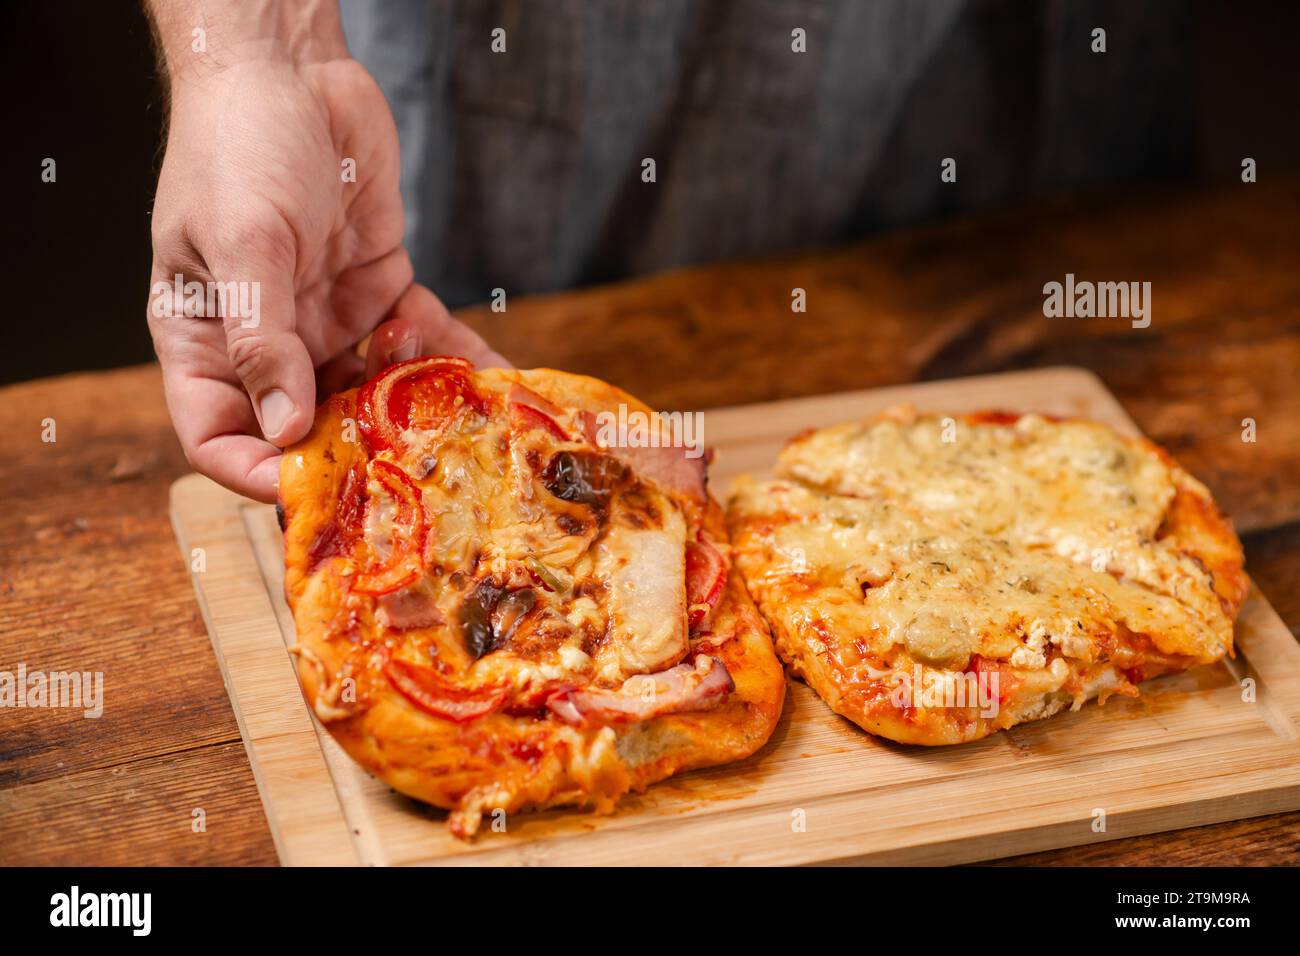 Pizza Perfection: Un uomo presenta con orgoglio una pizza fatta in casa su una superficie di legno, mostrando la sua creazione culinaria Foto Stock